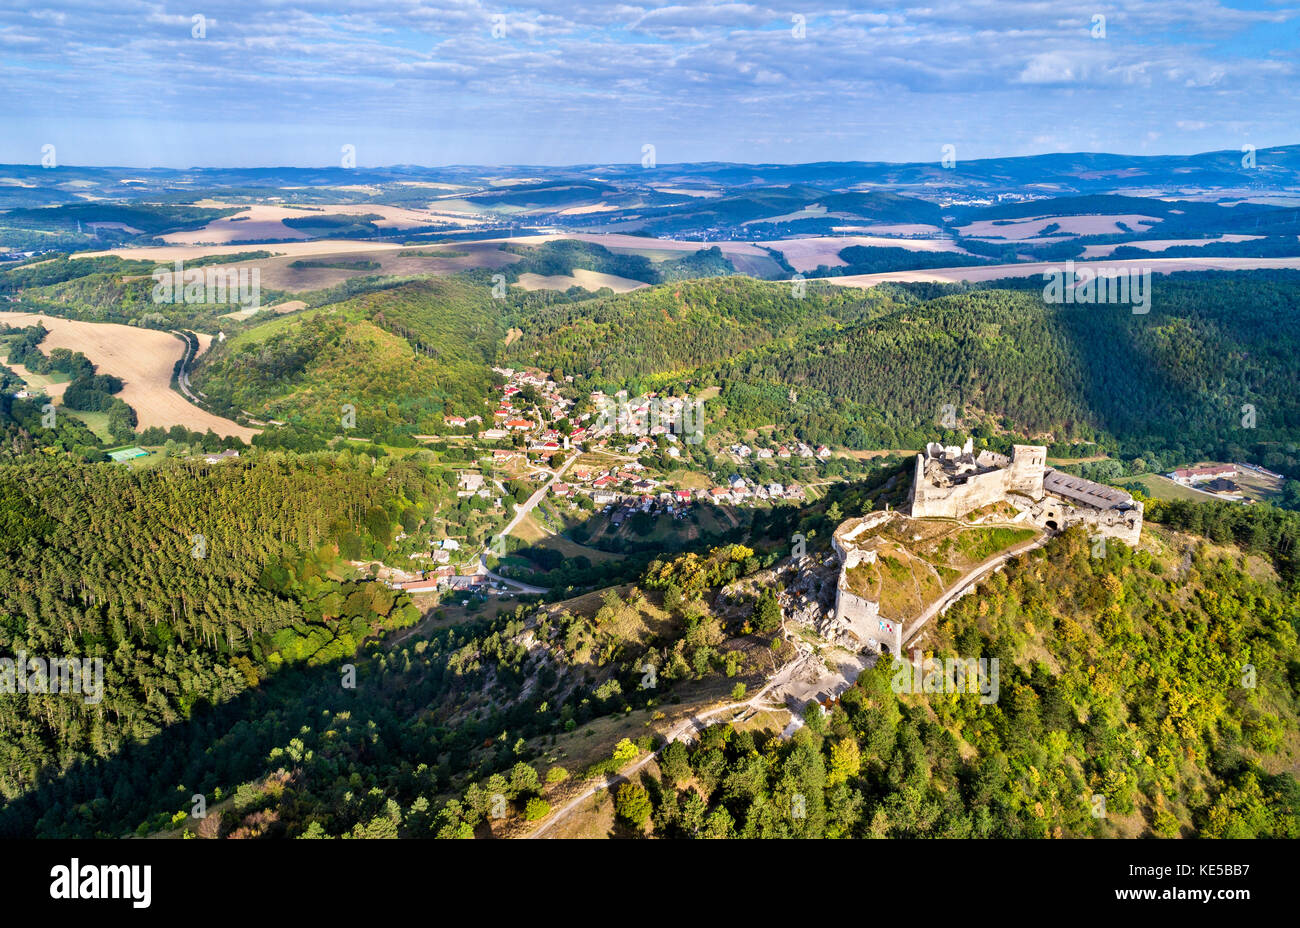 Vue aérienne du château de cachtice dans les Carpates de l'ouest, la Slovaquie Banque D'Images